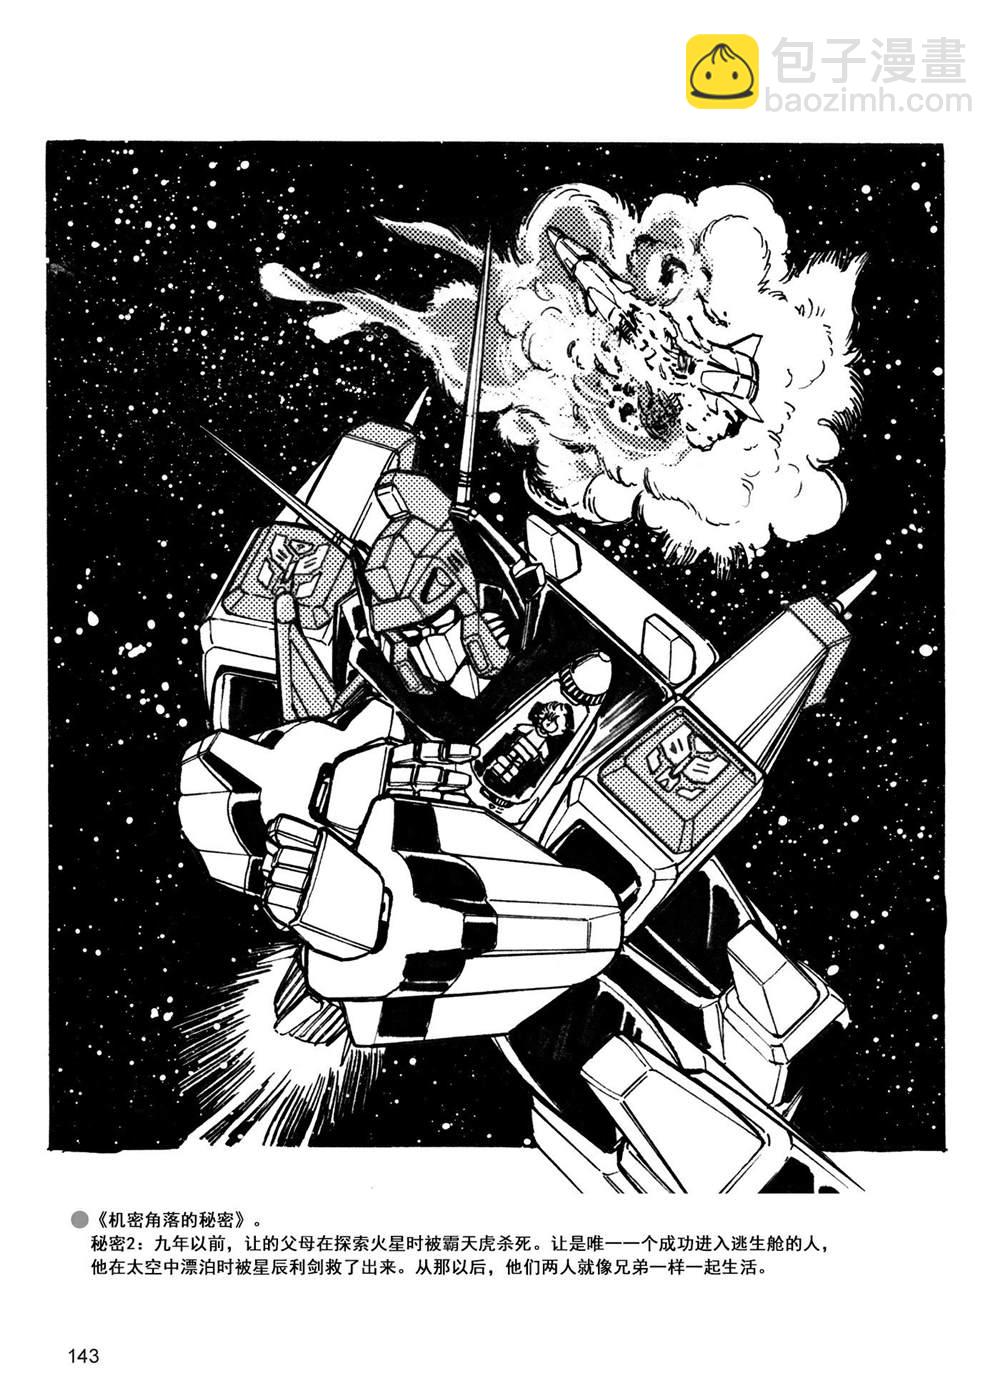 變形金剛日版G1雜誌插畫 - 戰鬥吧！超機械生命體變形金剛：勝利之鬥爭 - 7